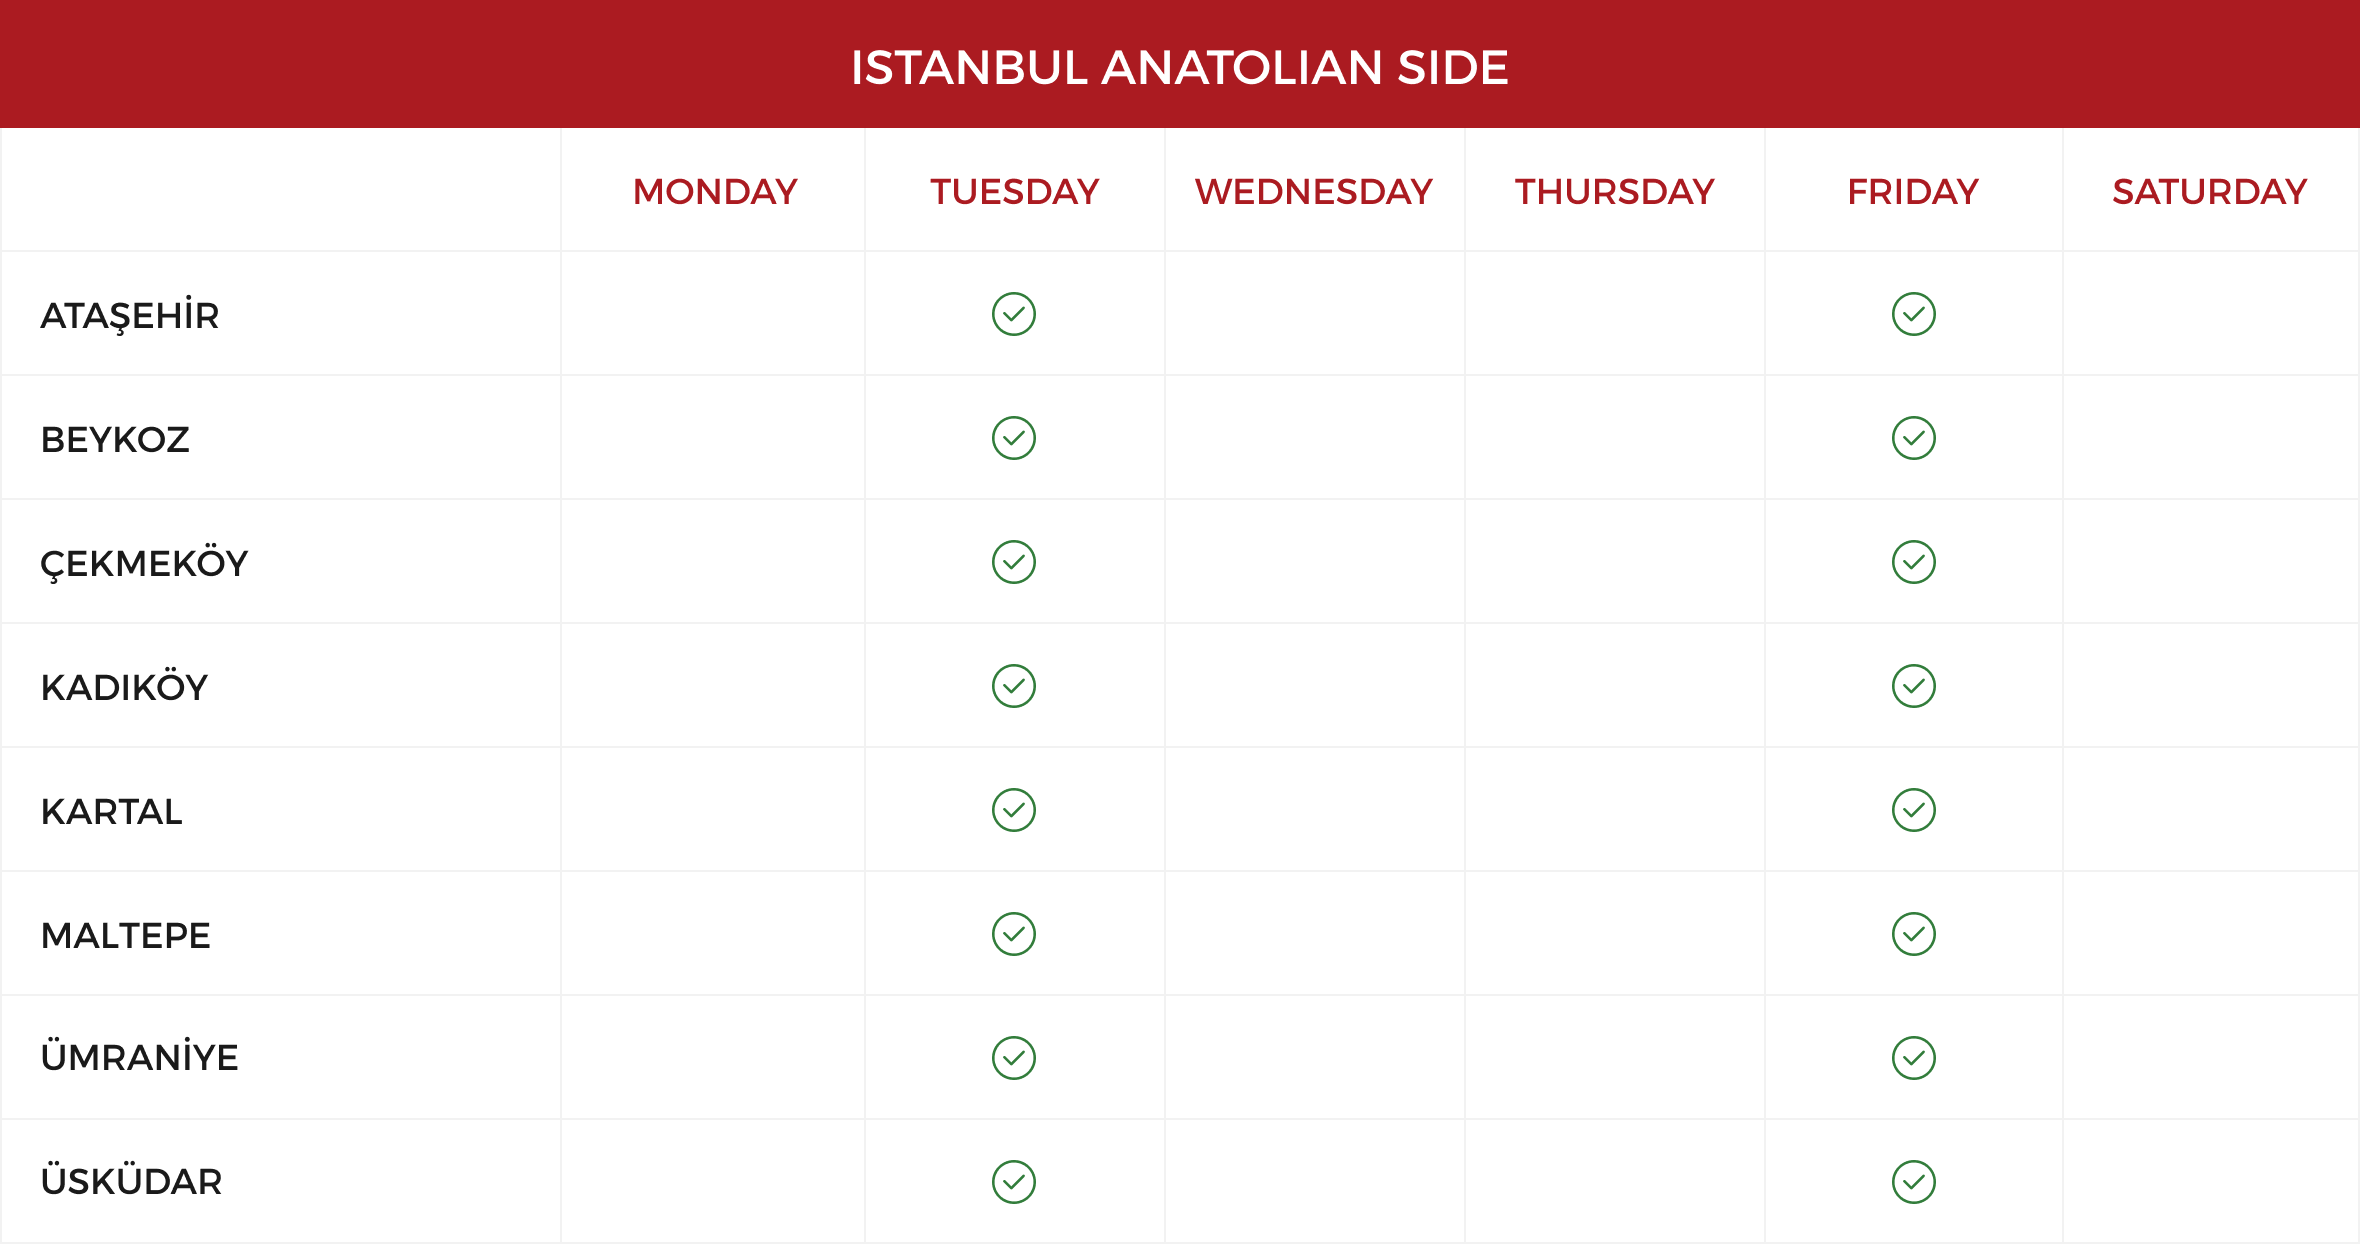 anatolian-side.png (67 KB)